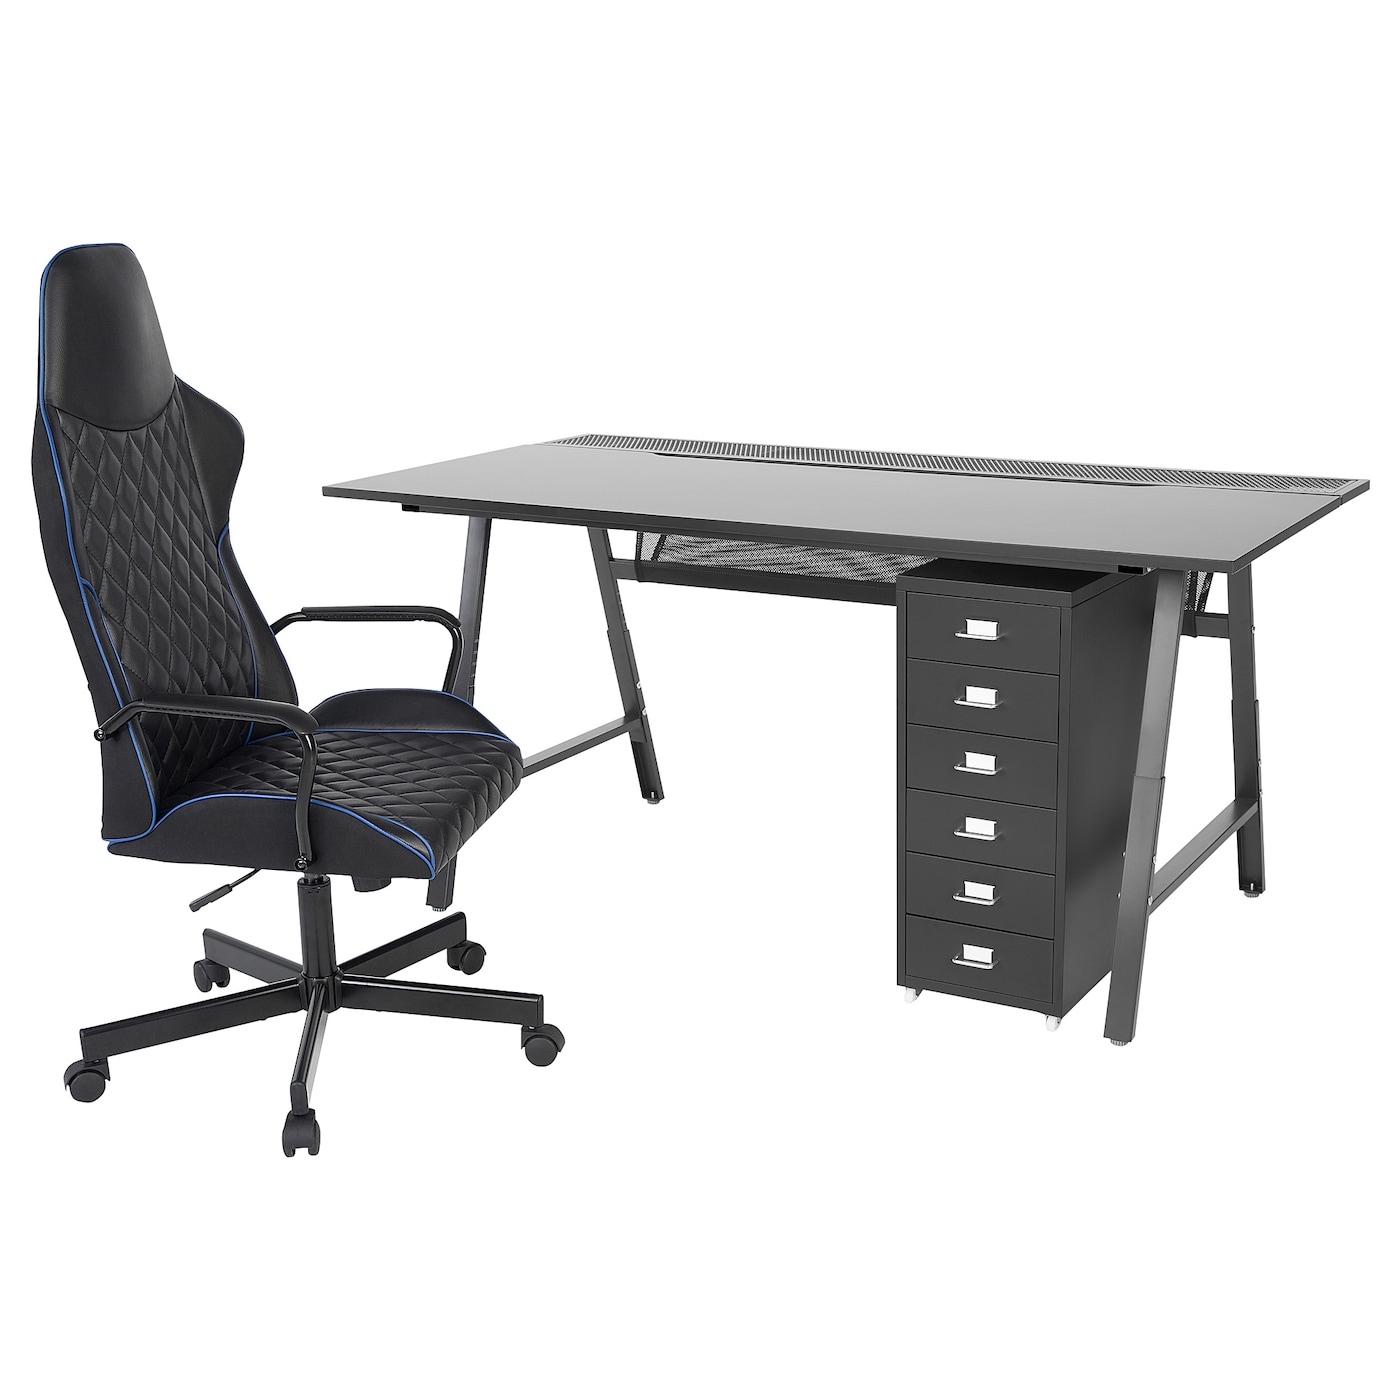 Игровой стол и стул с тумбой - IKEA UTESPELARE/HELMER, черный, 160х78 см, УТЕСПЕЛАРЕ/ХЕЛМЕР ИКЕА